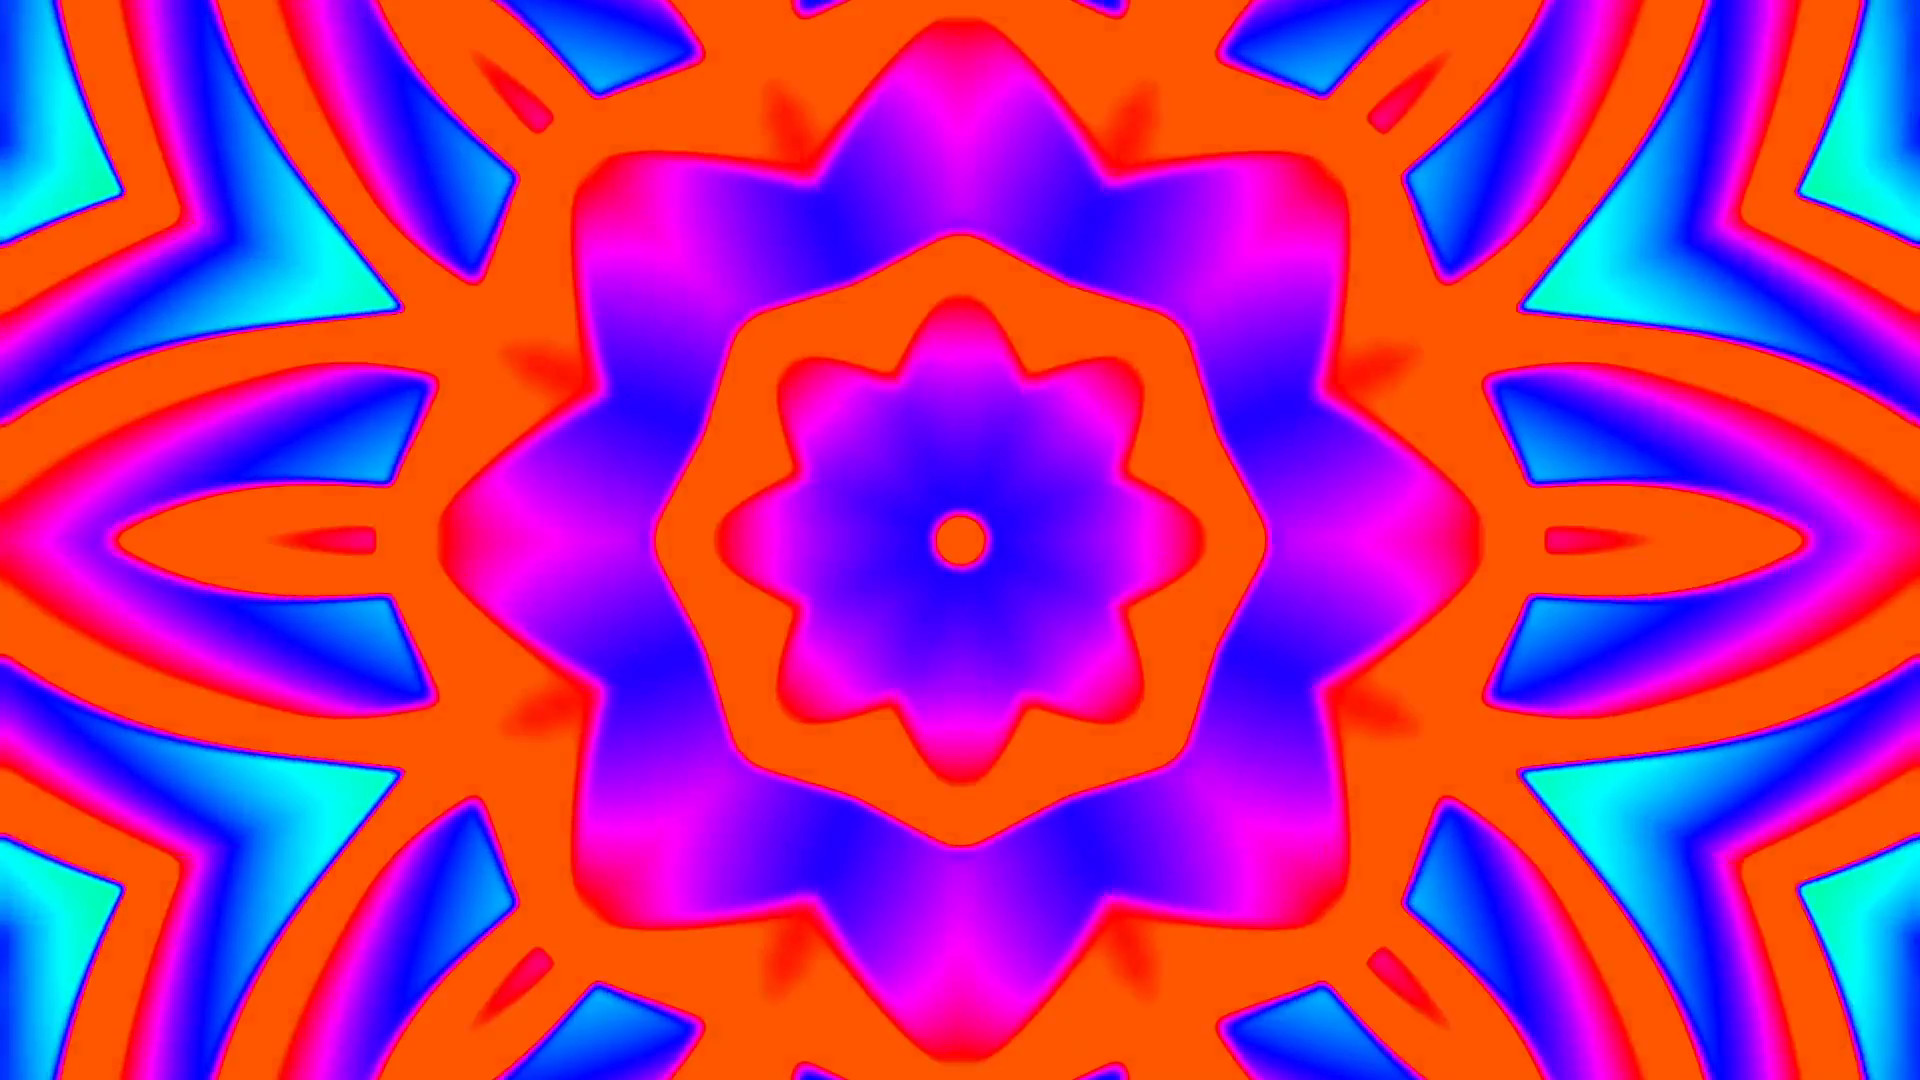 1920x1080 My Trippy Kaleidoscope Simple Colorful VJ background loop 5